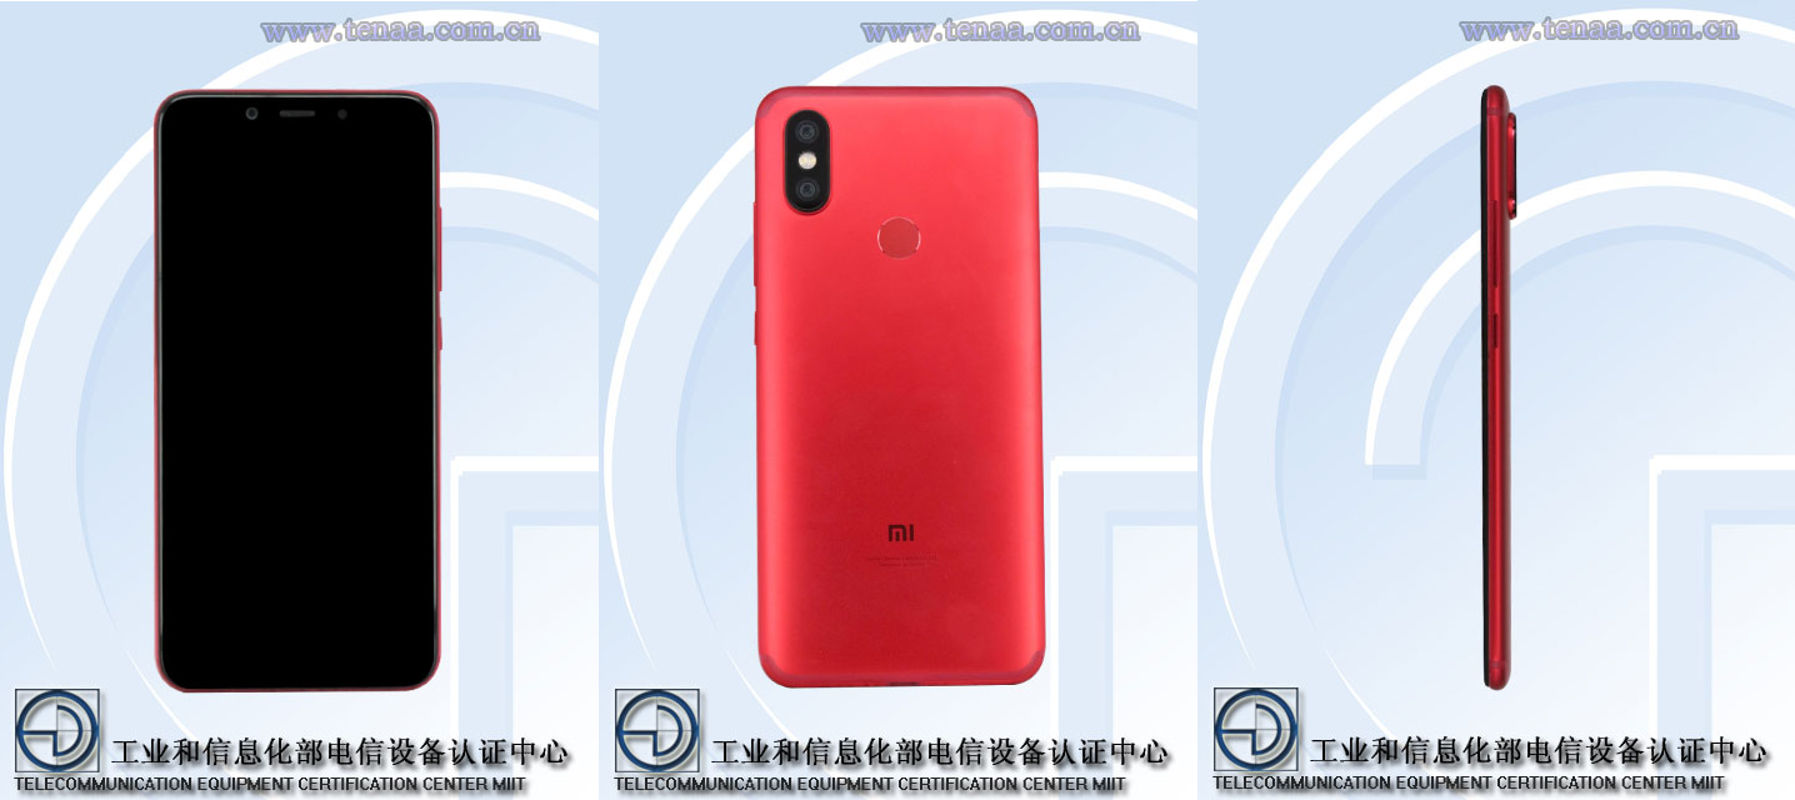 Xiaomi Mi 6X TENAA listing